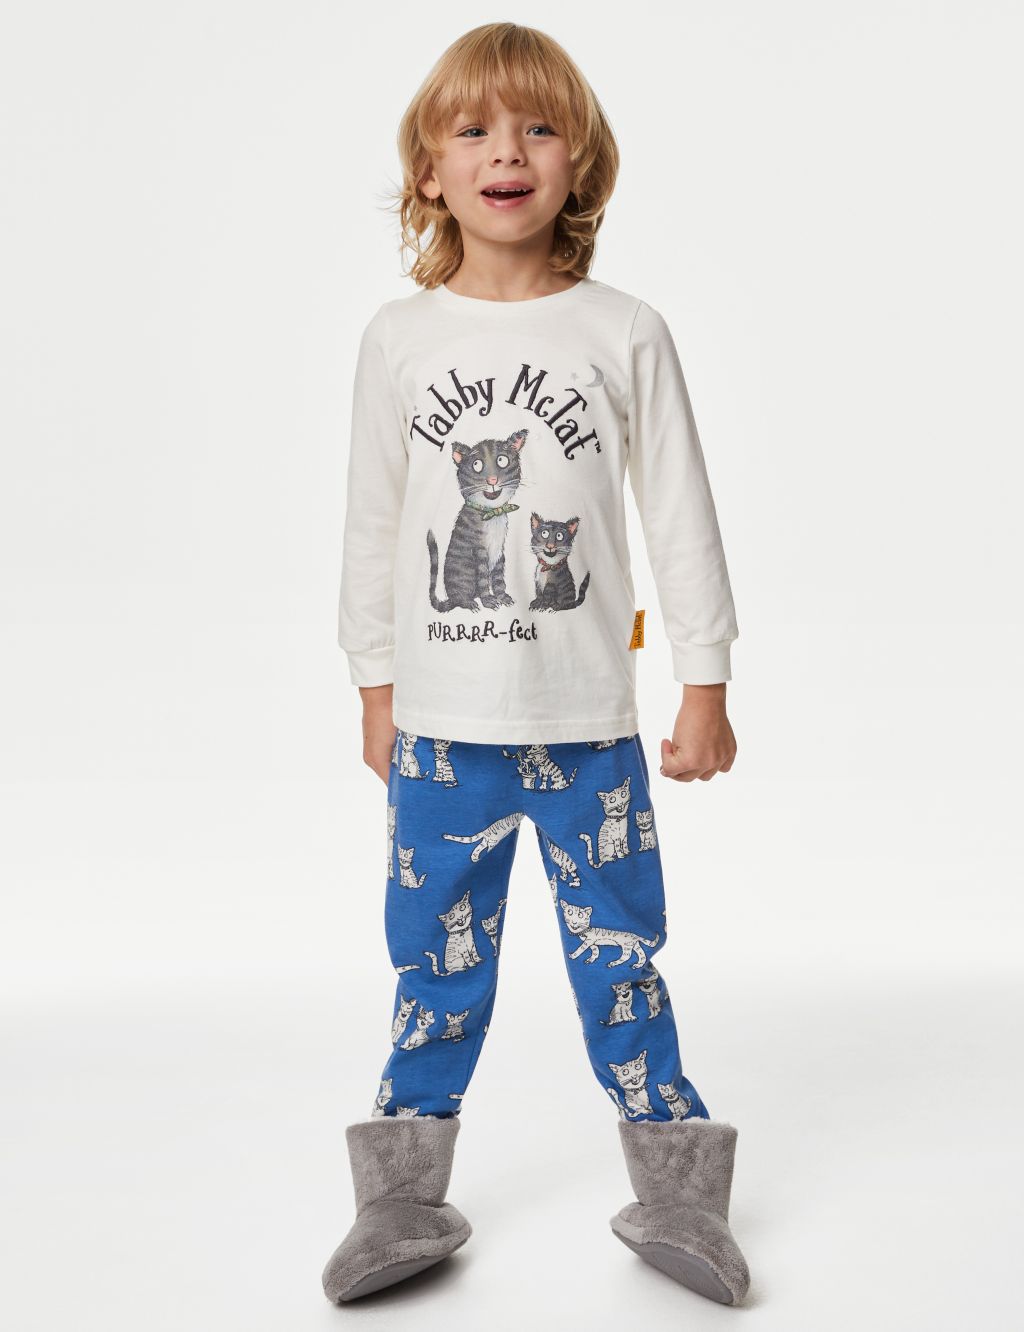 Tabby McTat™ Pyjamas (1-6 Yrs) image 1